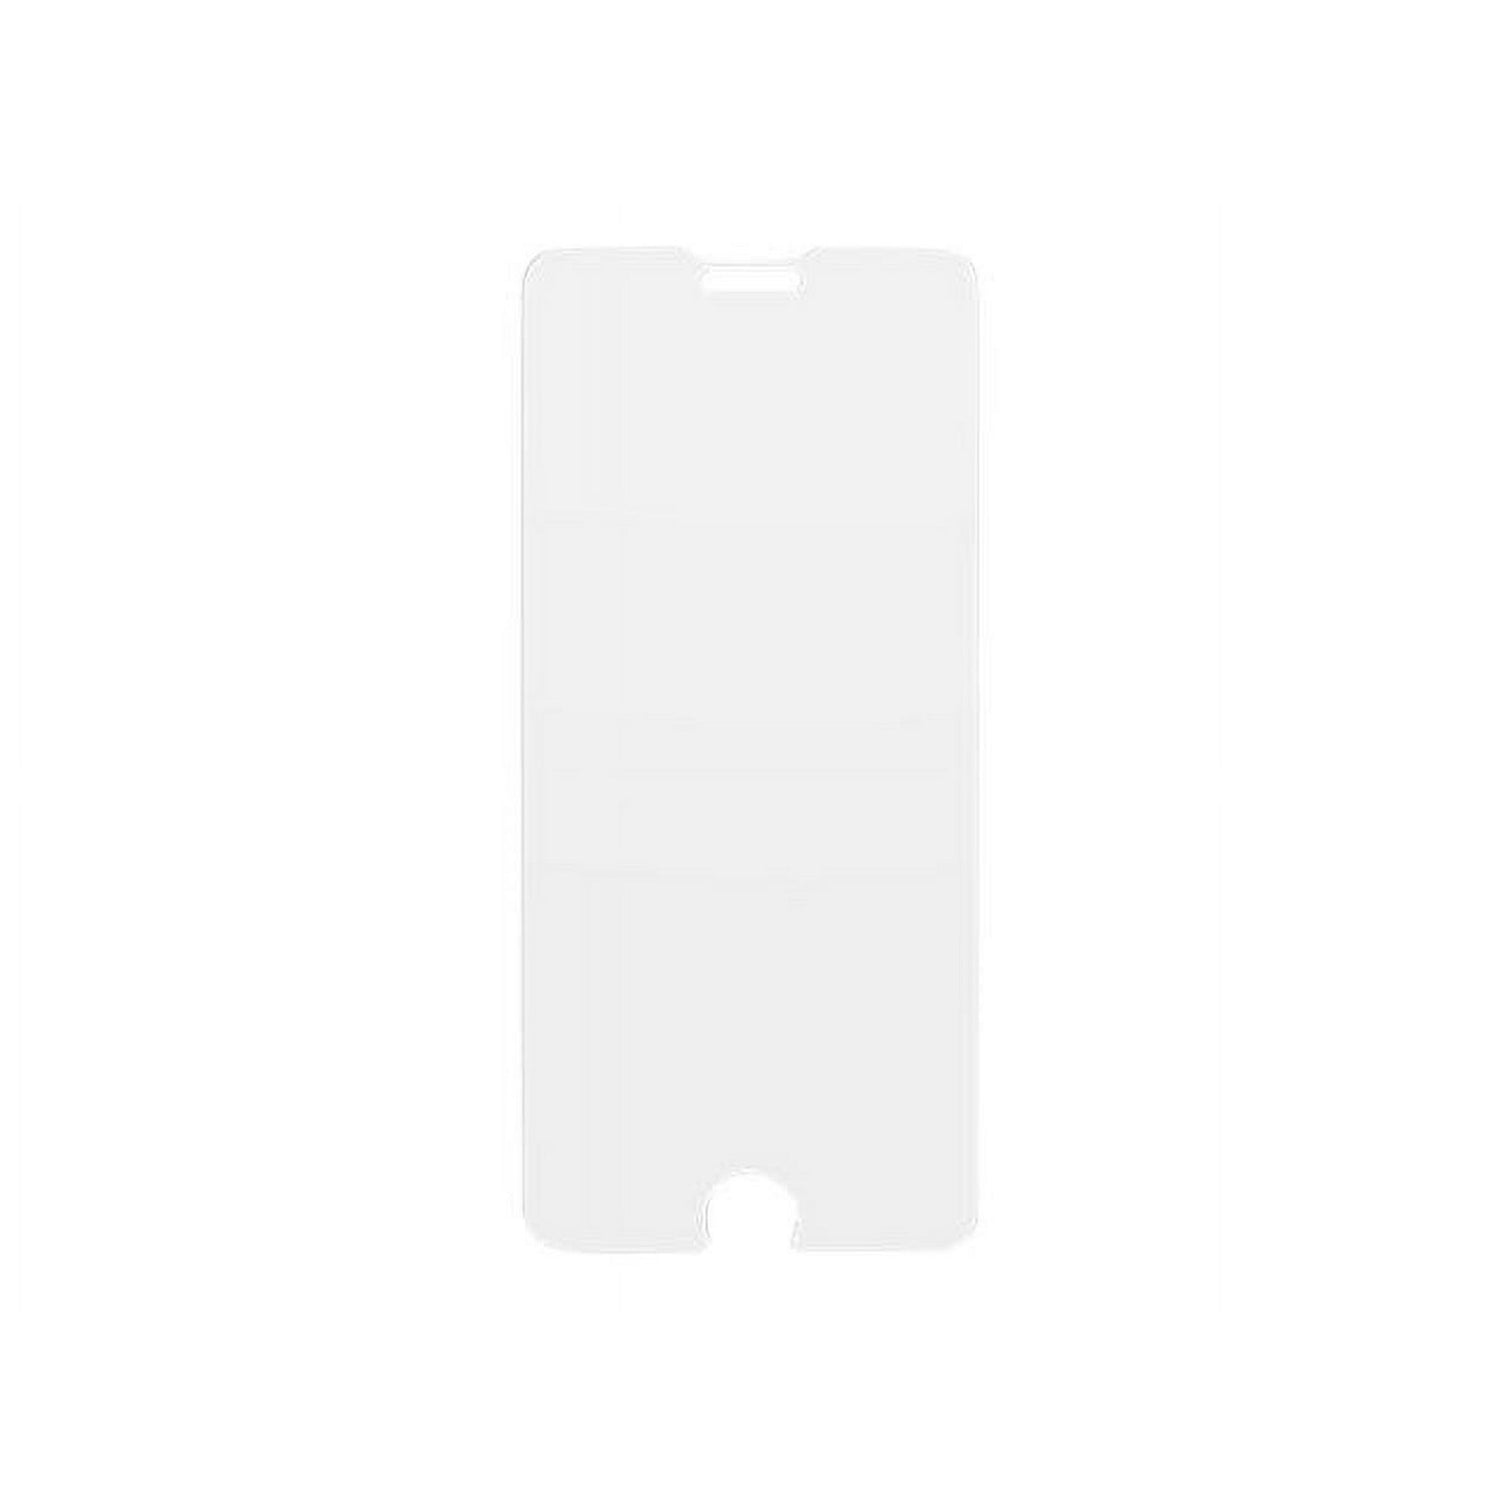 OtterBox Amplify Glare Guard Screen Protector for Apple iPhone 6/7/8/SE w/Glare Guard (New)